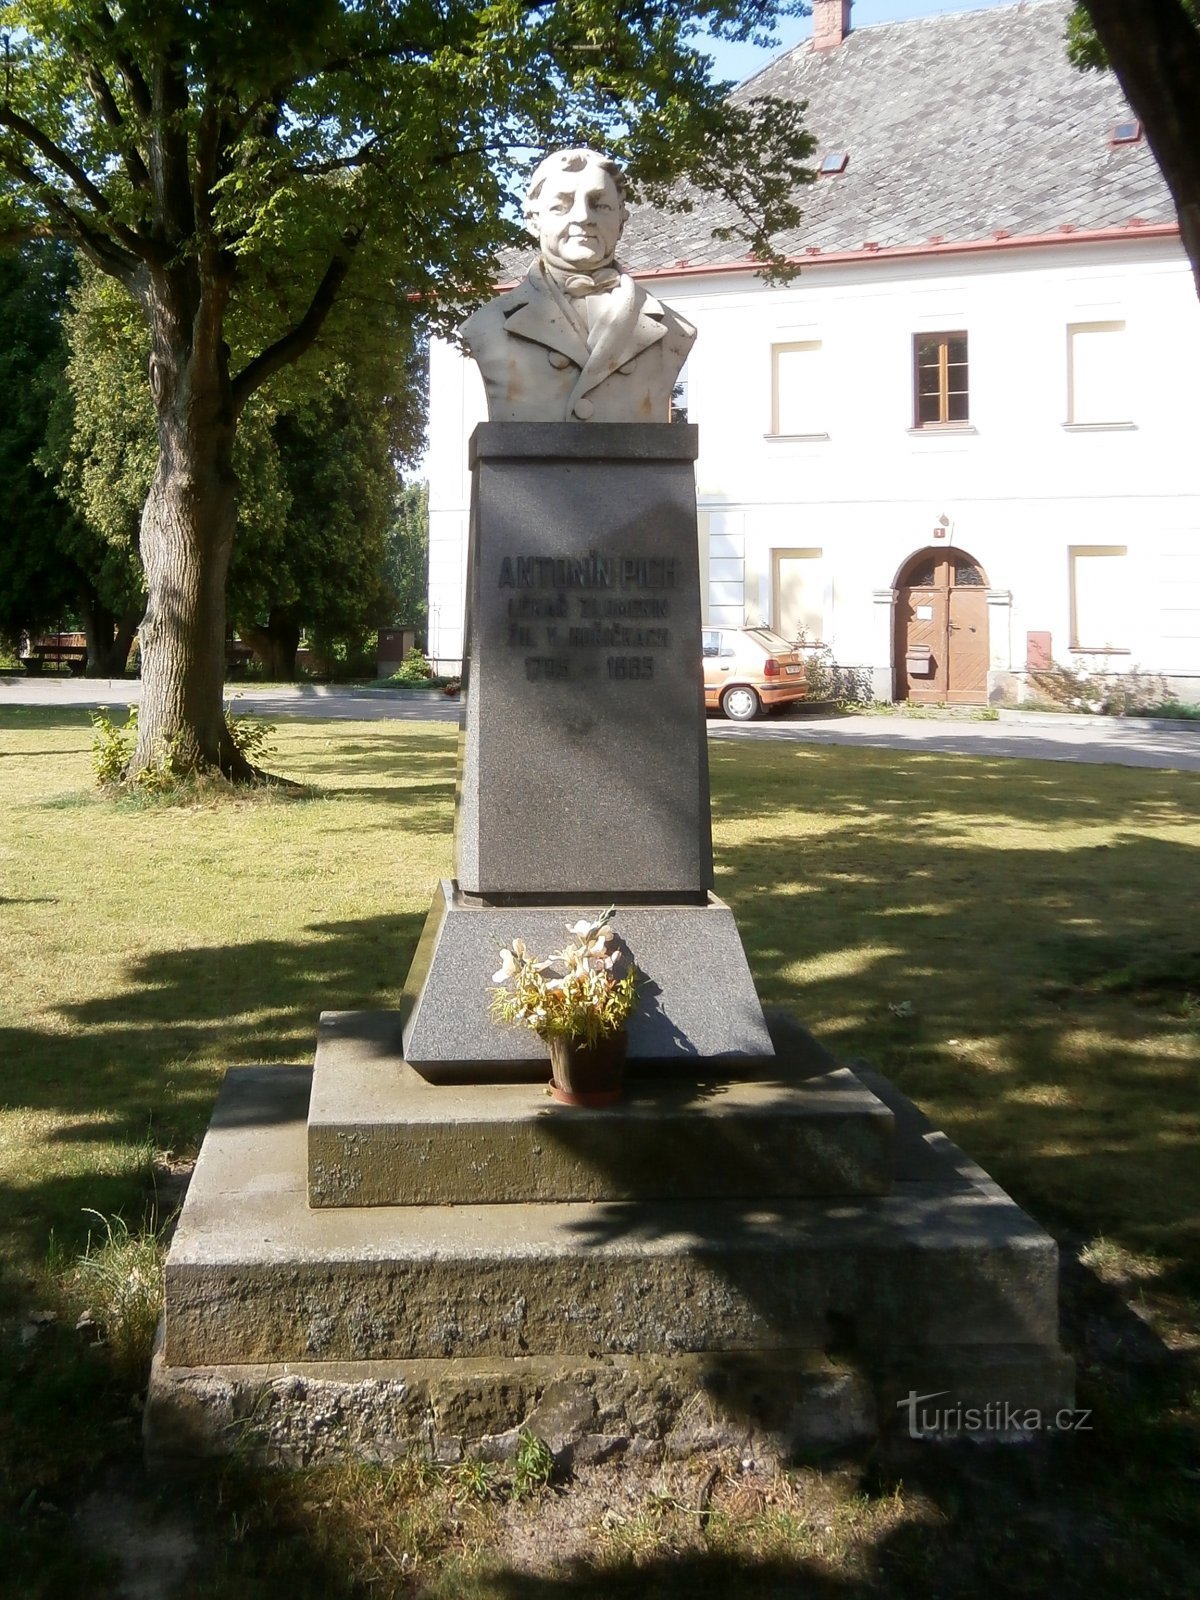 Spomenik Antonínu Pichi (Hořičky, 5.7.2017. oktober XNUMX)